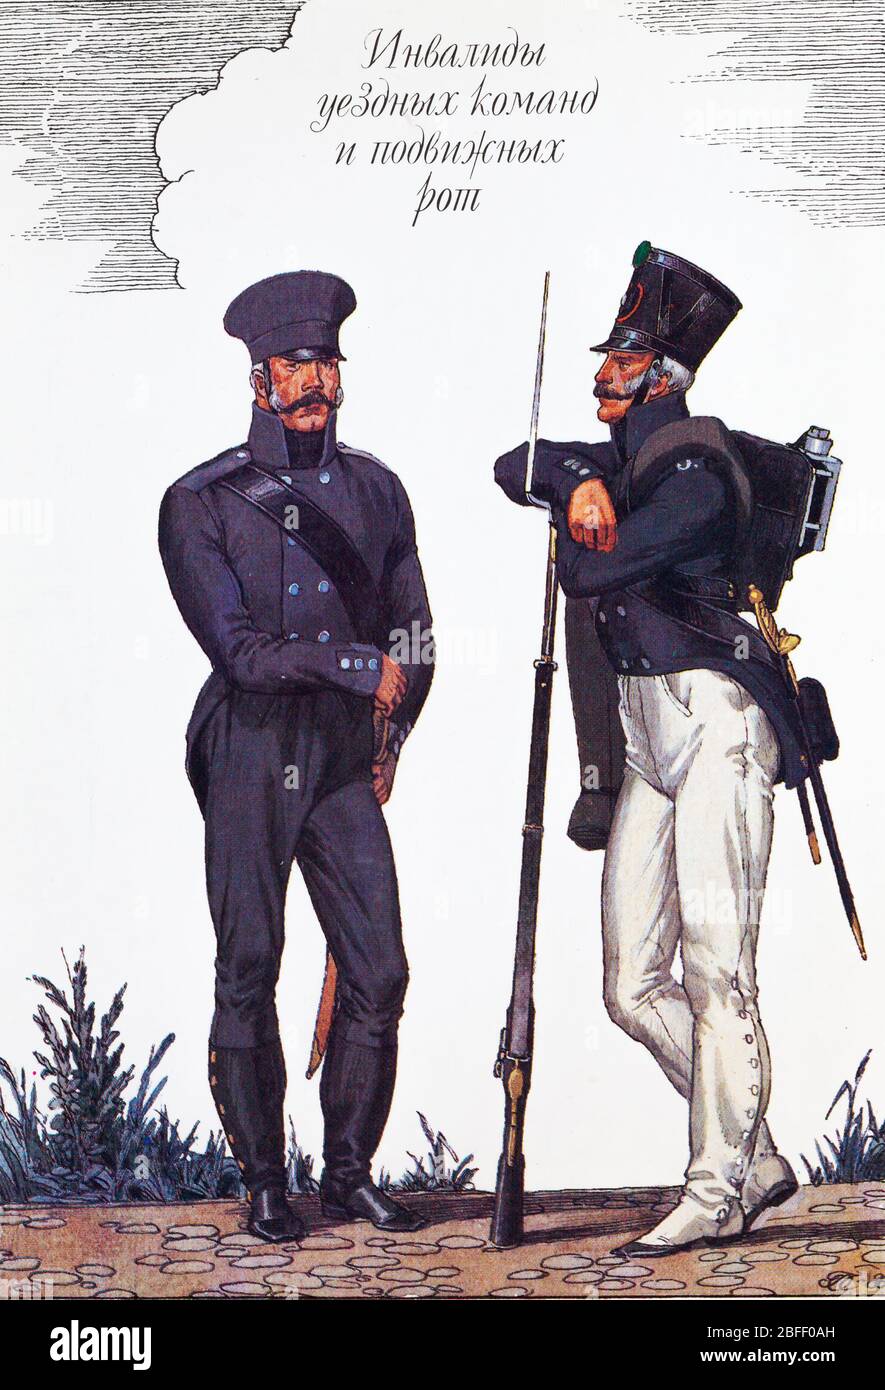 Anciens combattants, 1812, uniforme de l'armée russe du XIXe siècle, Russie Banque D'Images